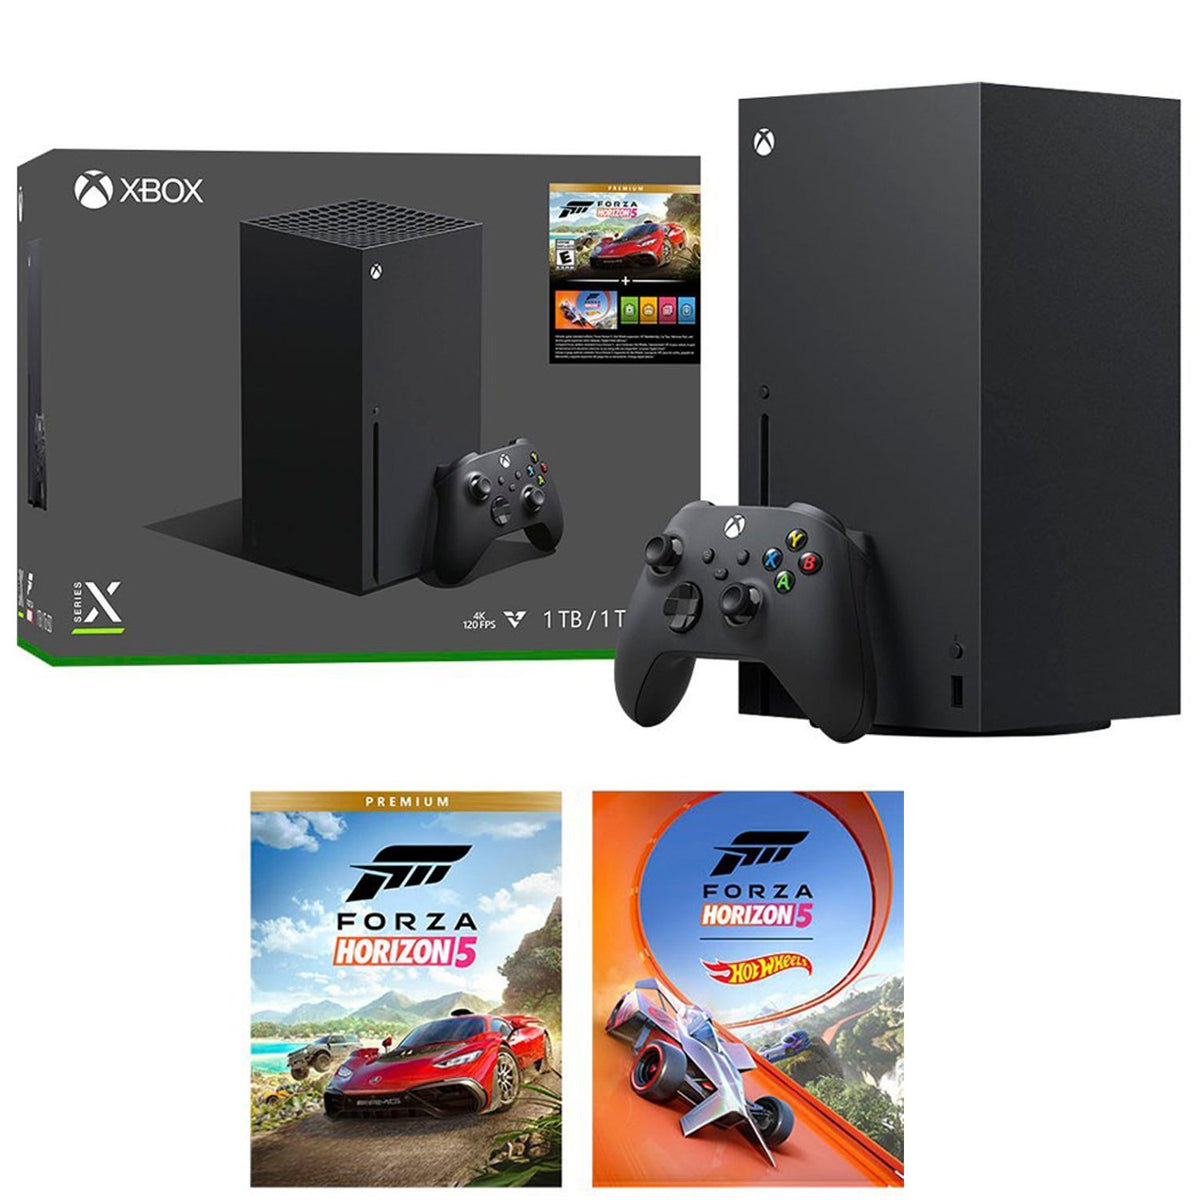 FORZA HORIZON 5 Xbox One/Series X